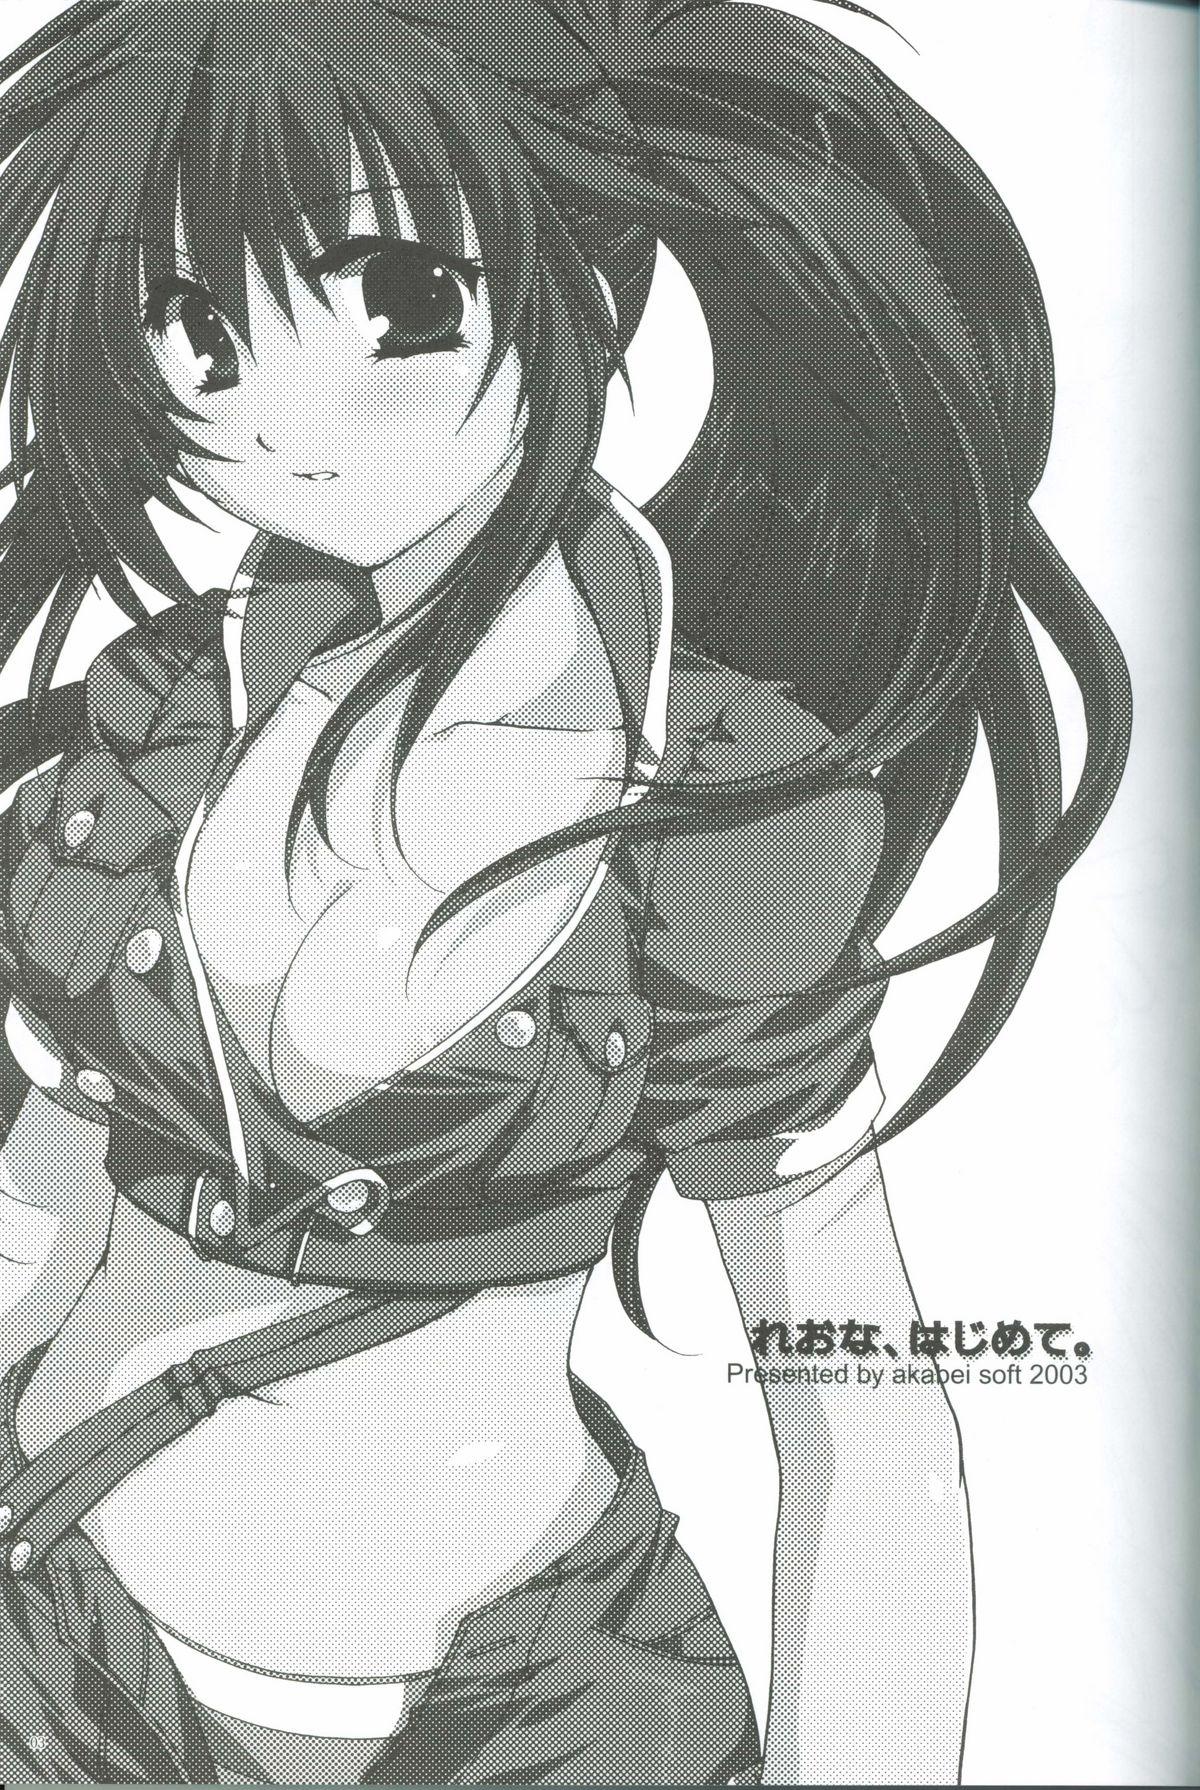 Leona, Hajimete 1